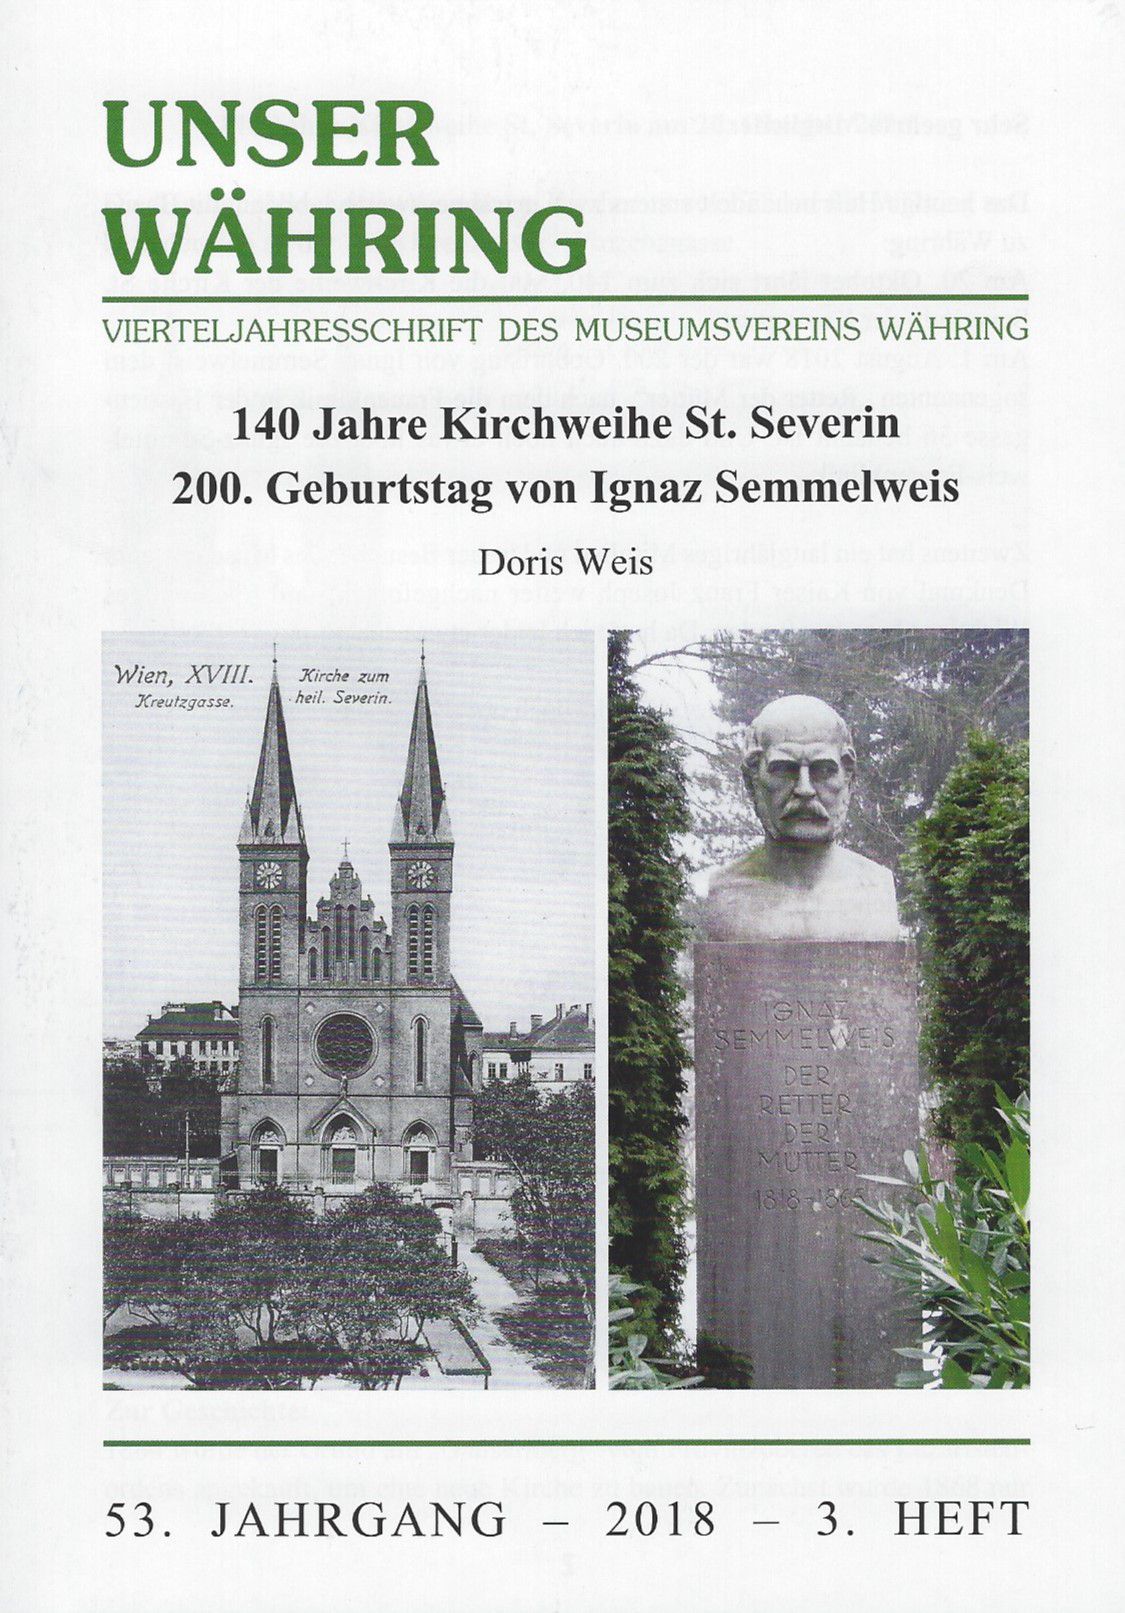 Publikation: 140 Jahre Kirchweihe St. Severin, 200.Geburtstag von Ignaz Semmelweis. Bezirksmuseum Währing